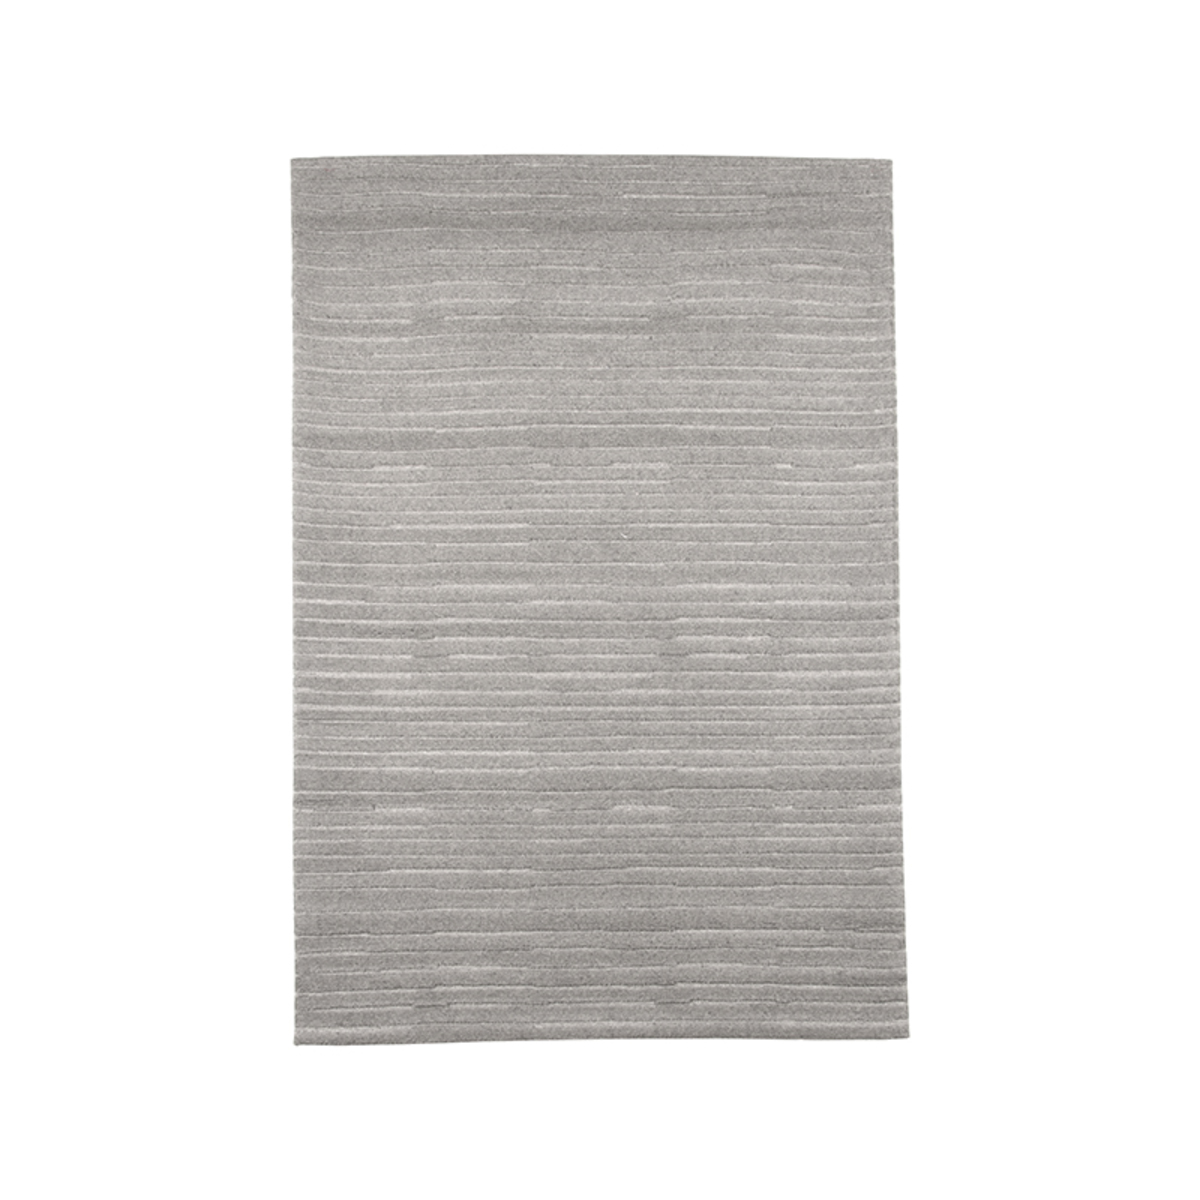  Vloerkleden Luxy - Grijs - Synthetisch - 160x230 cm afbeelding 1